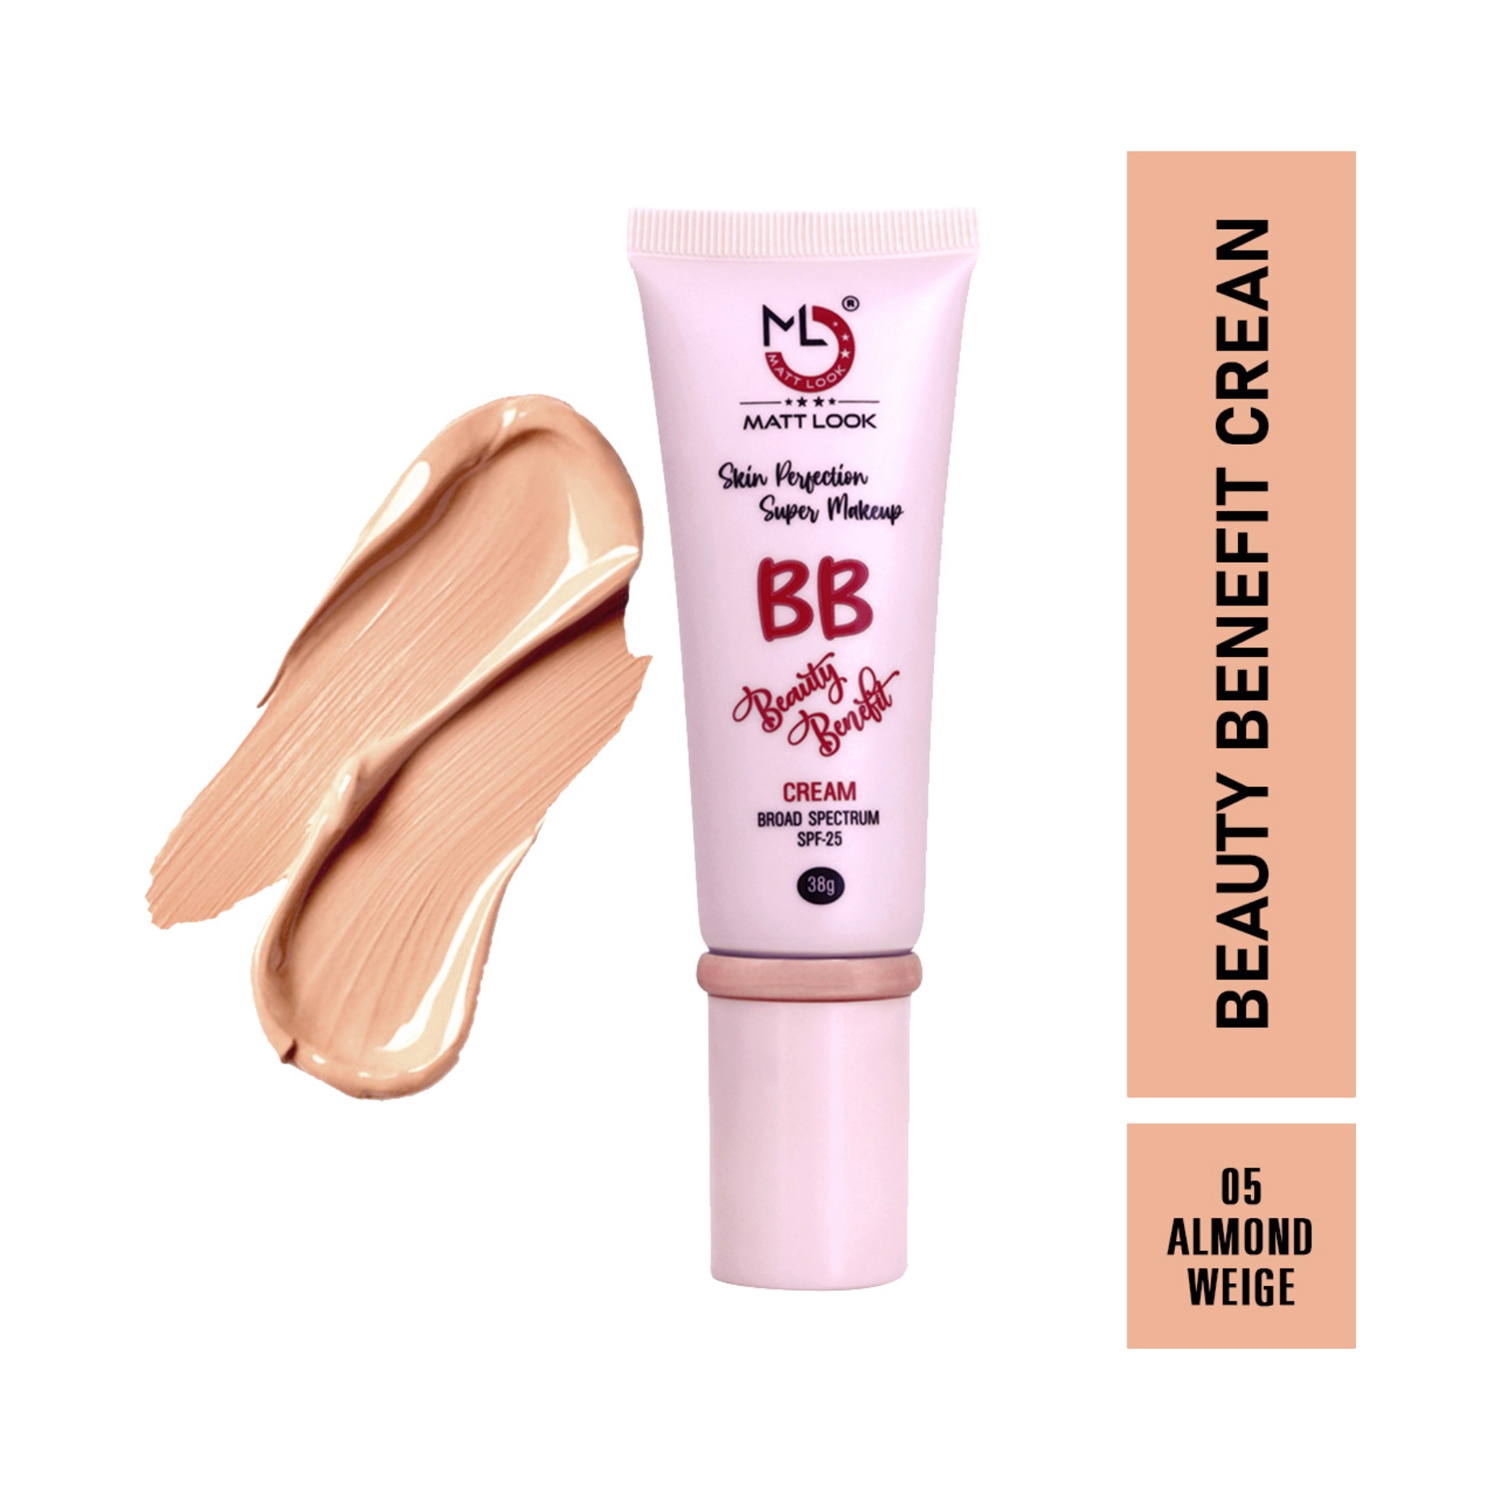 Matt Look | Matt Look Skin Perfection Super Makeup BB Beauty Benefit Cream With SPF 25 - 05 Almond Beige (38g)